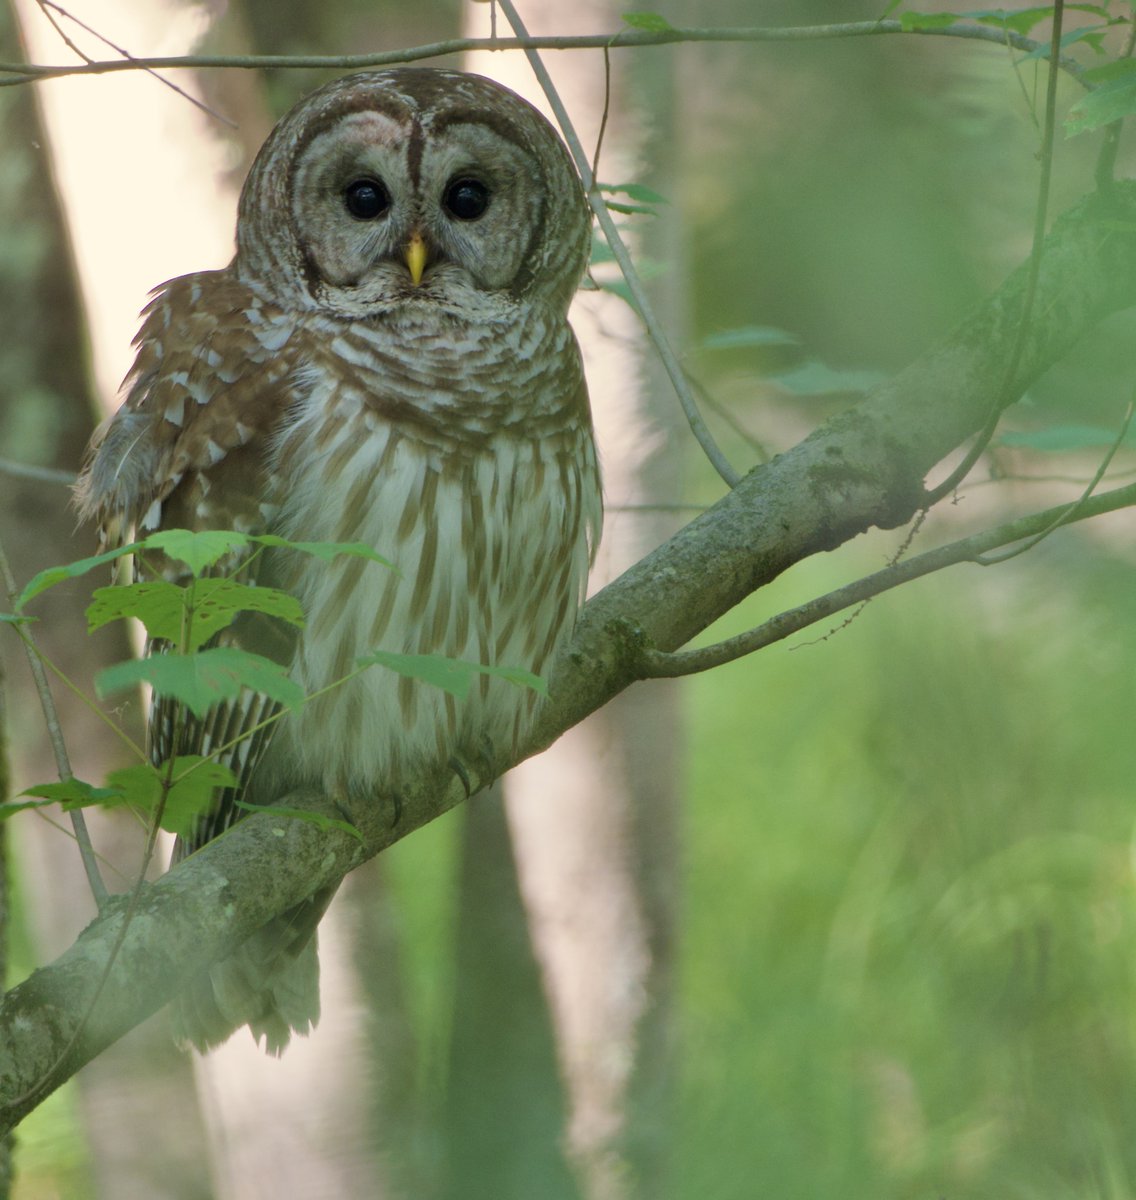 Good Morning. #BarredOwl #Owl #Nature #Wildlife #Photography